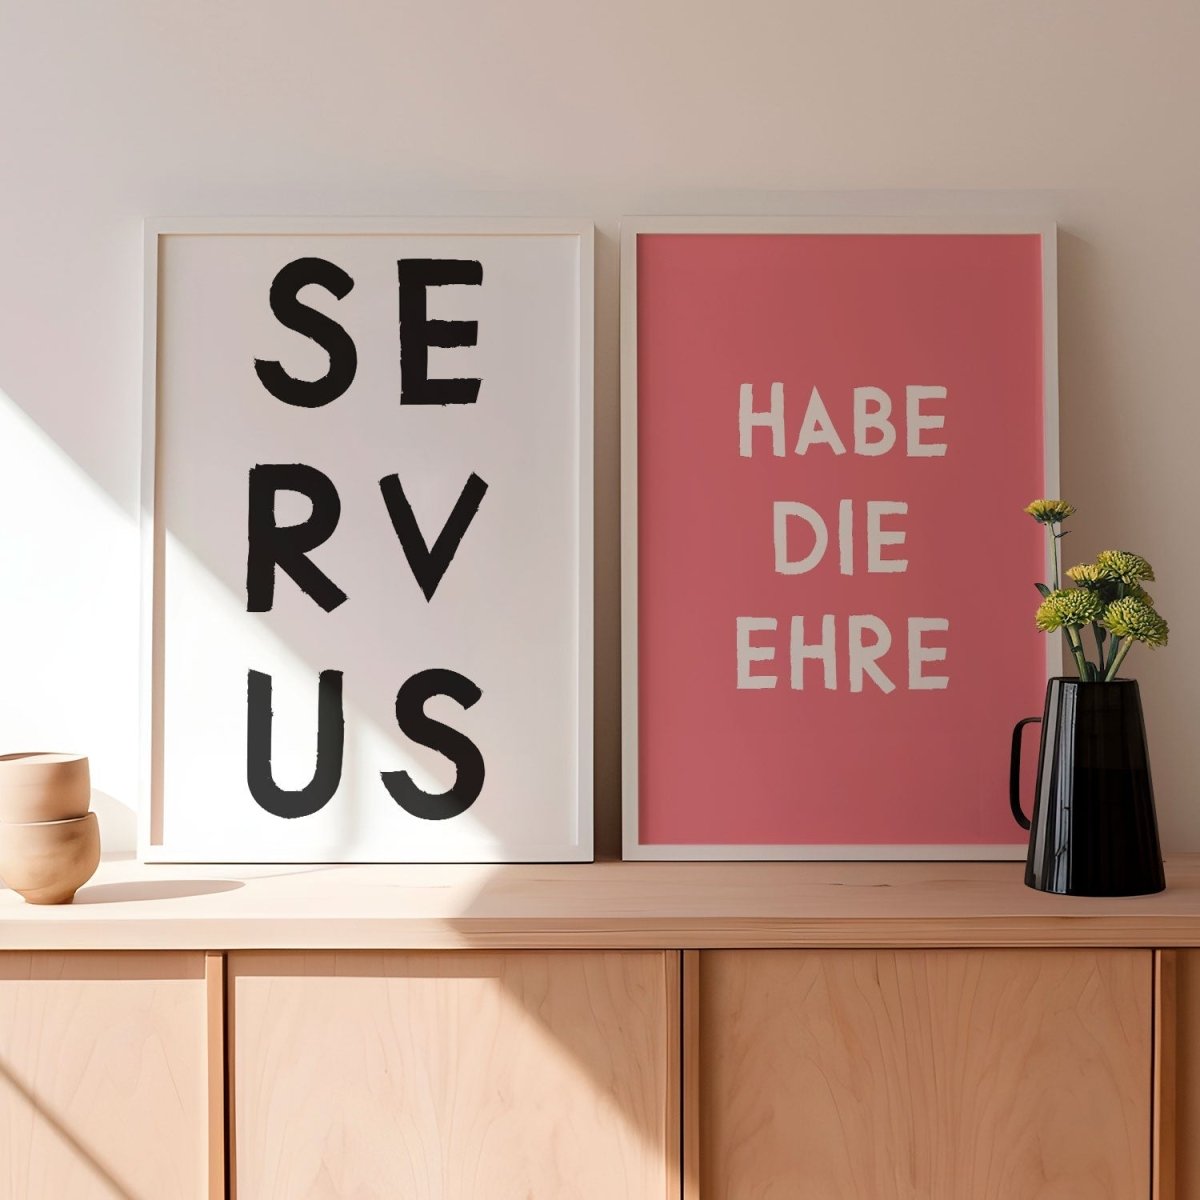 Servus Poster • bayrische Wandkunst • Poster für waschechte Bayern • Bayerisches Poster • Bayerisches Plakat • Typoposter - vonSUSI